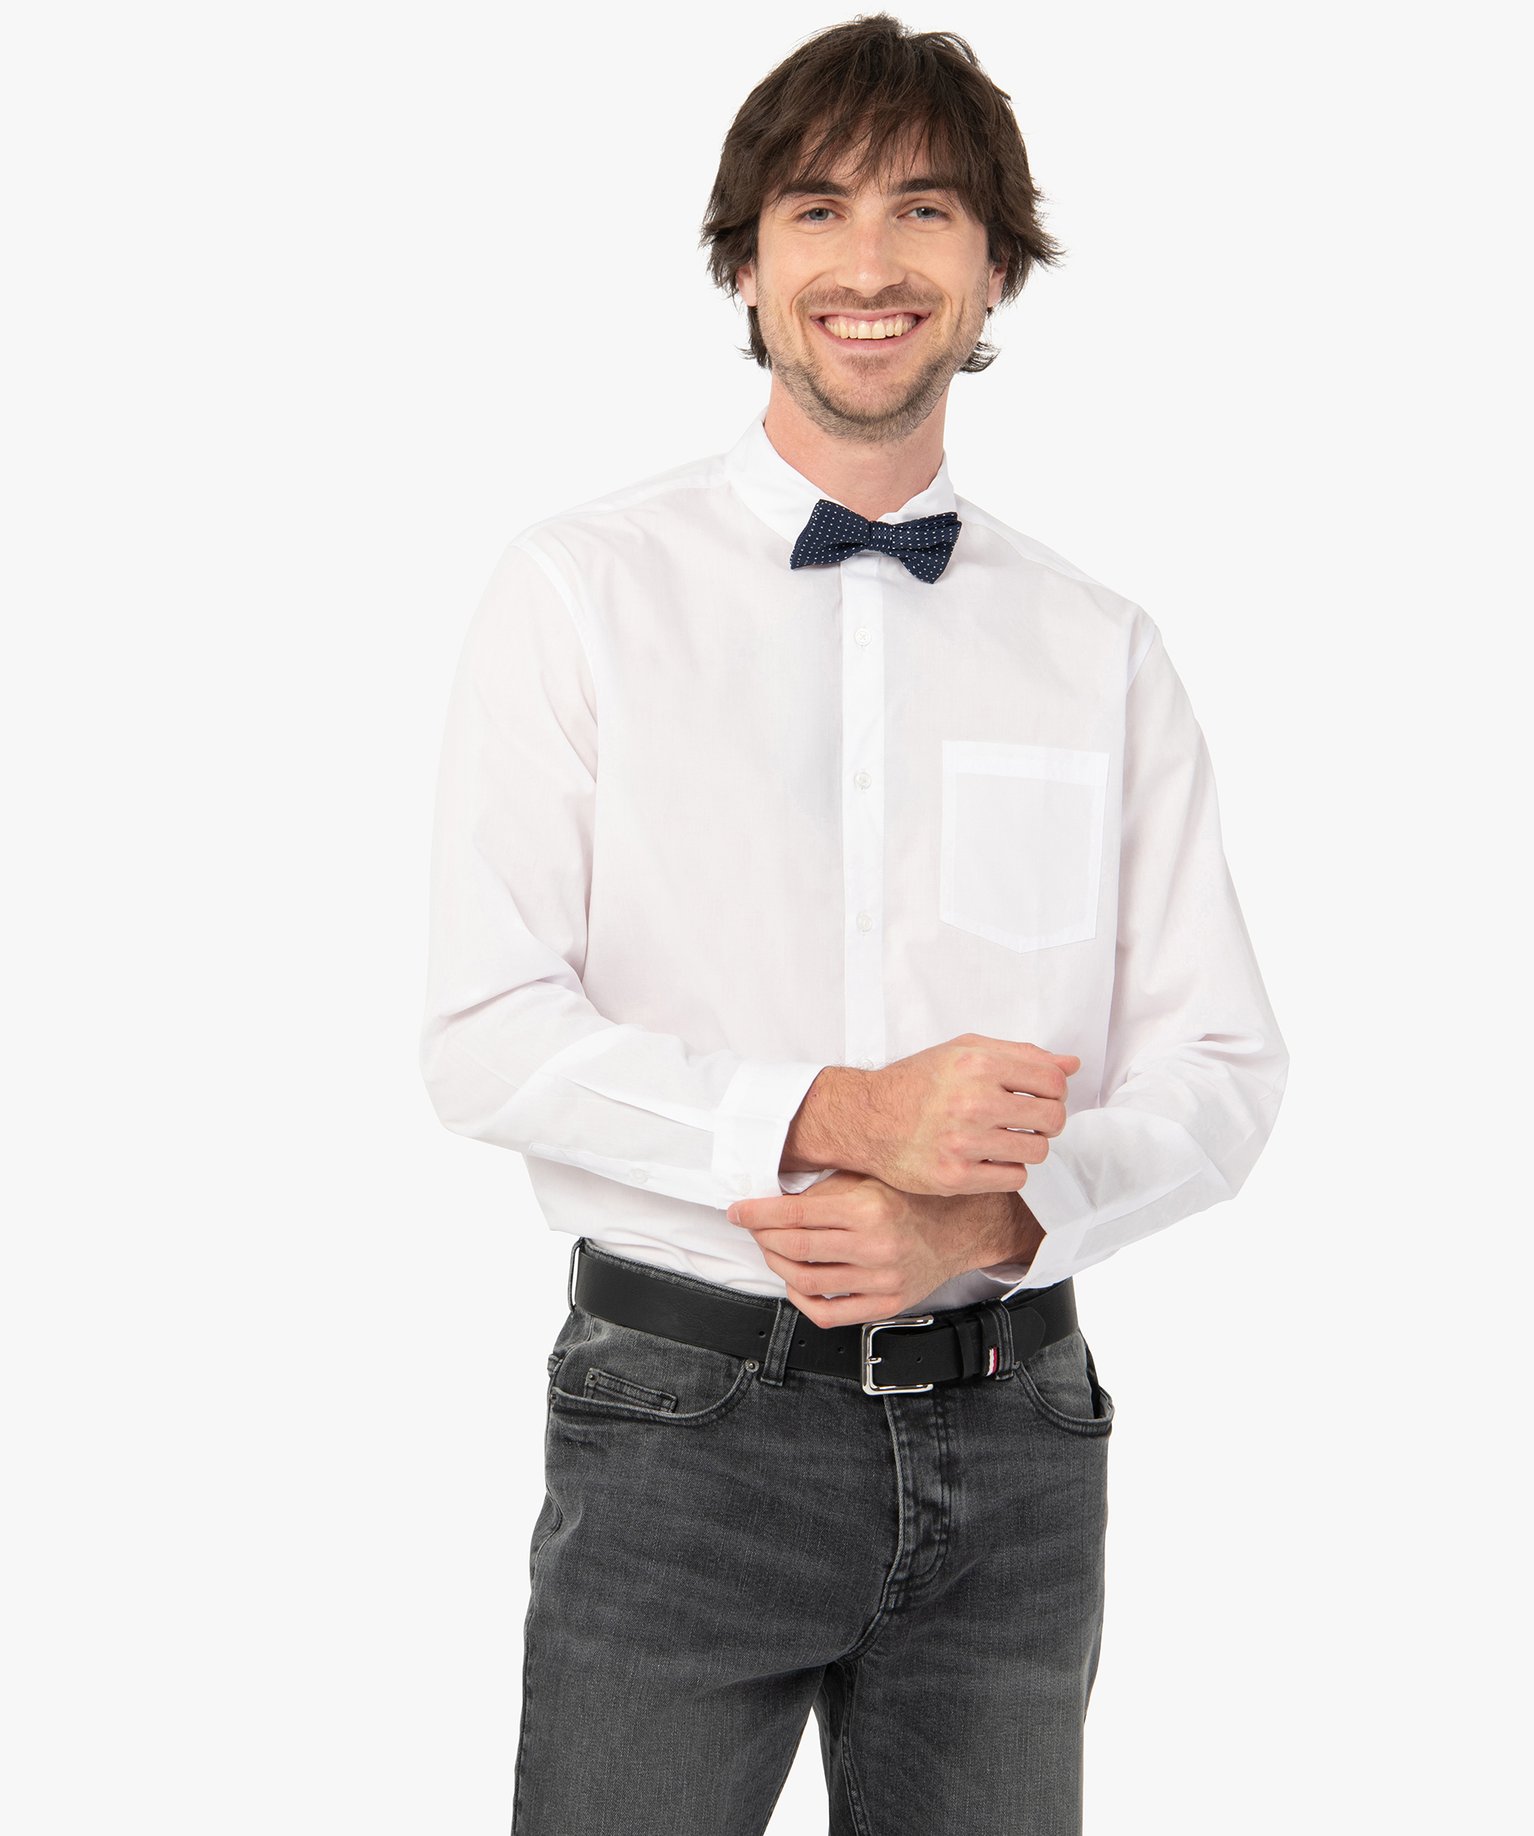 chemise homme uni a manches longues - repassage facile blanc chemise manches longues